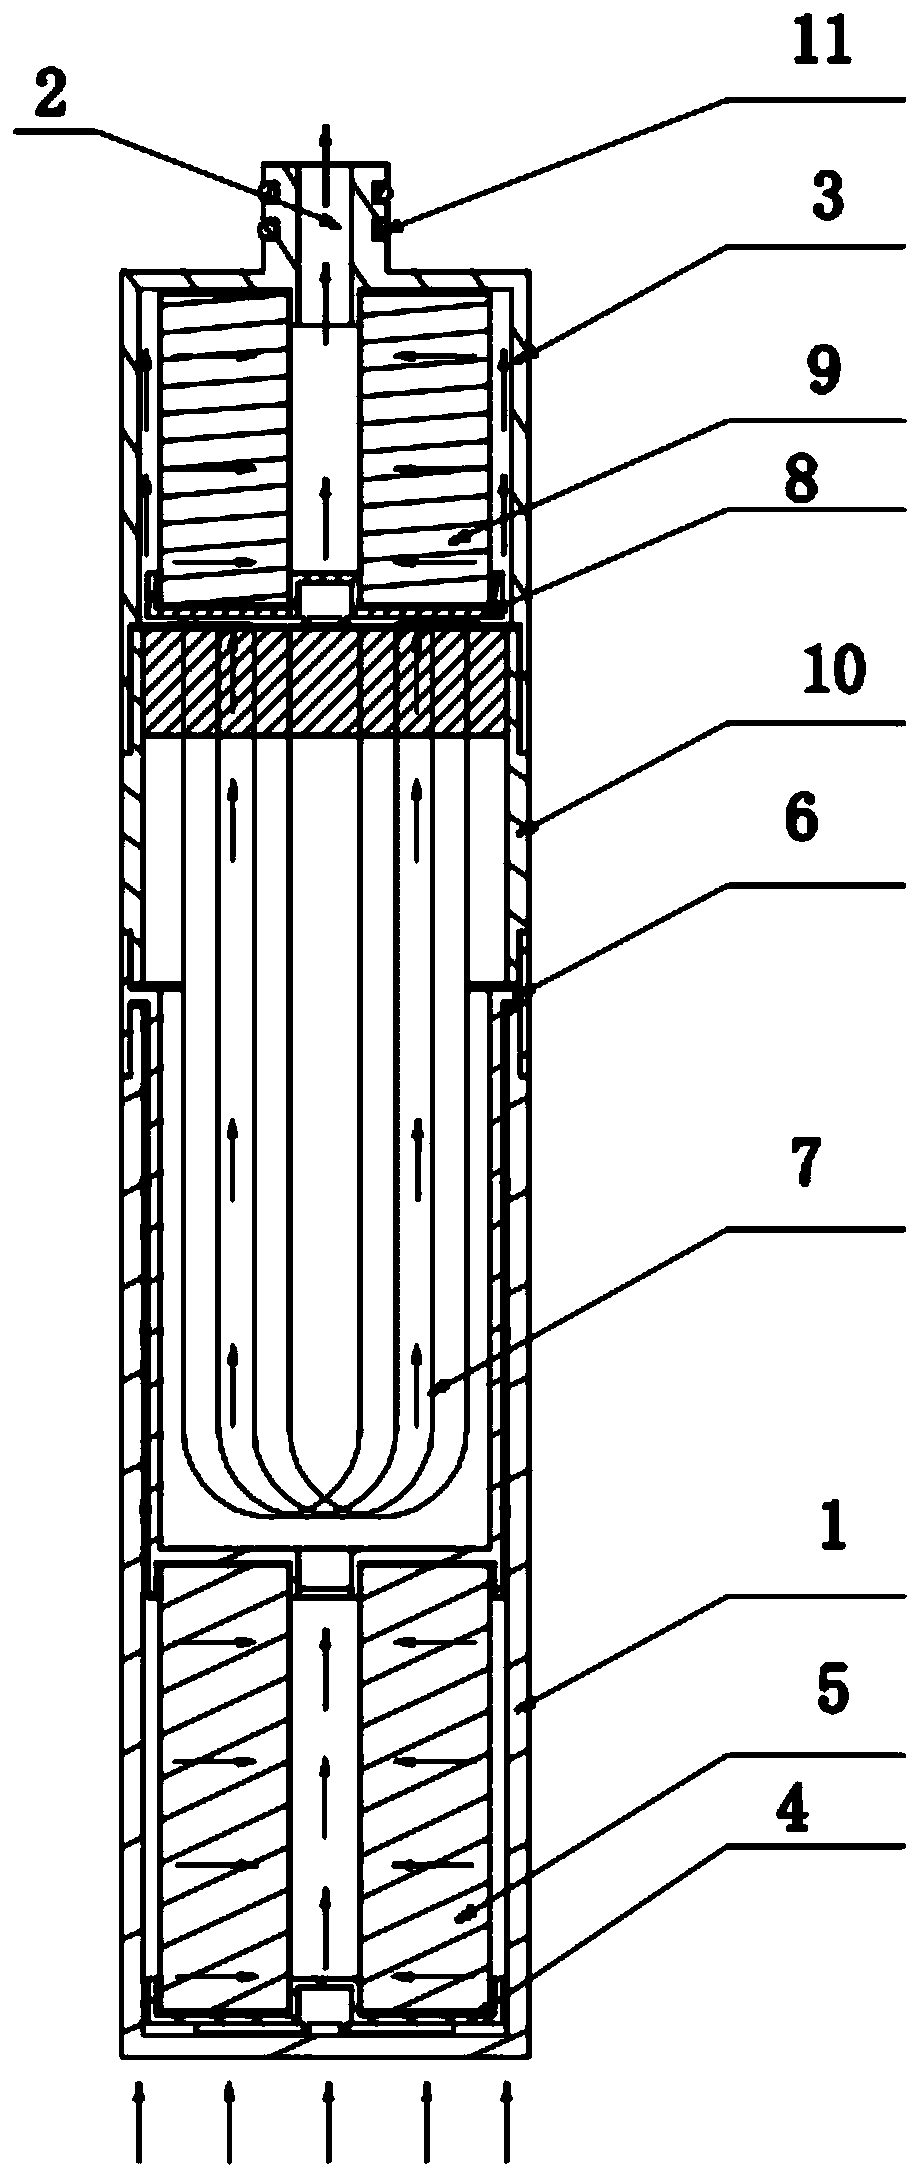 Faucet filter element structure